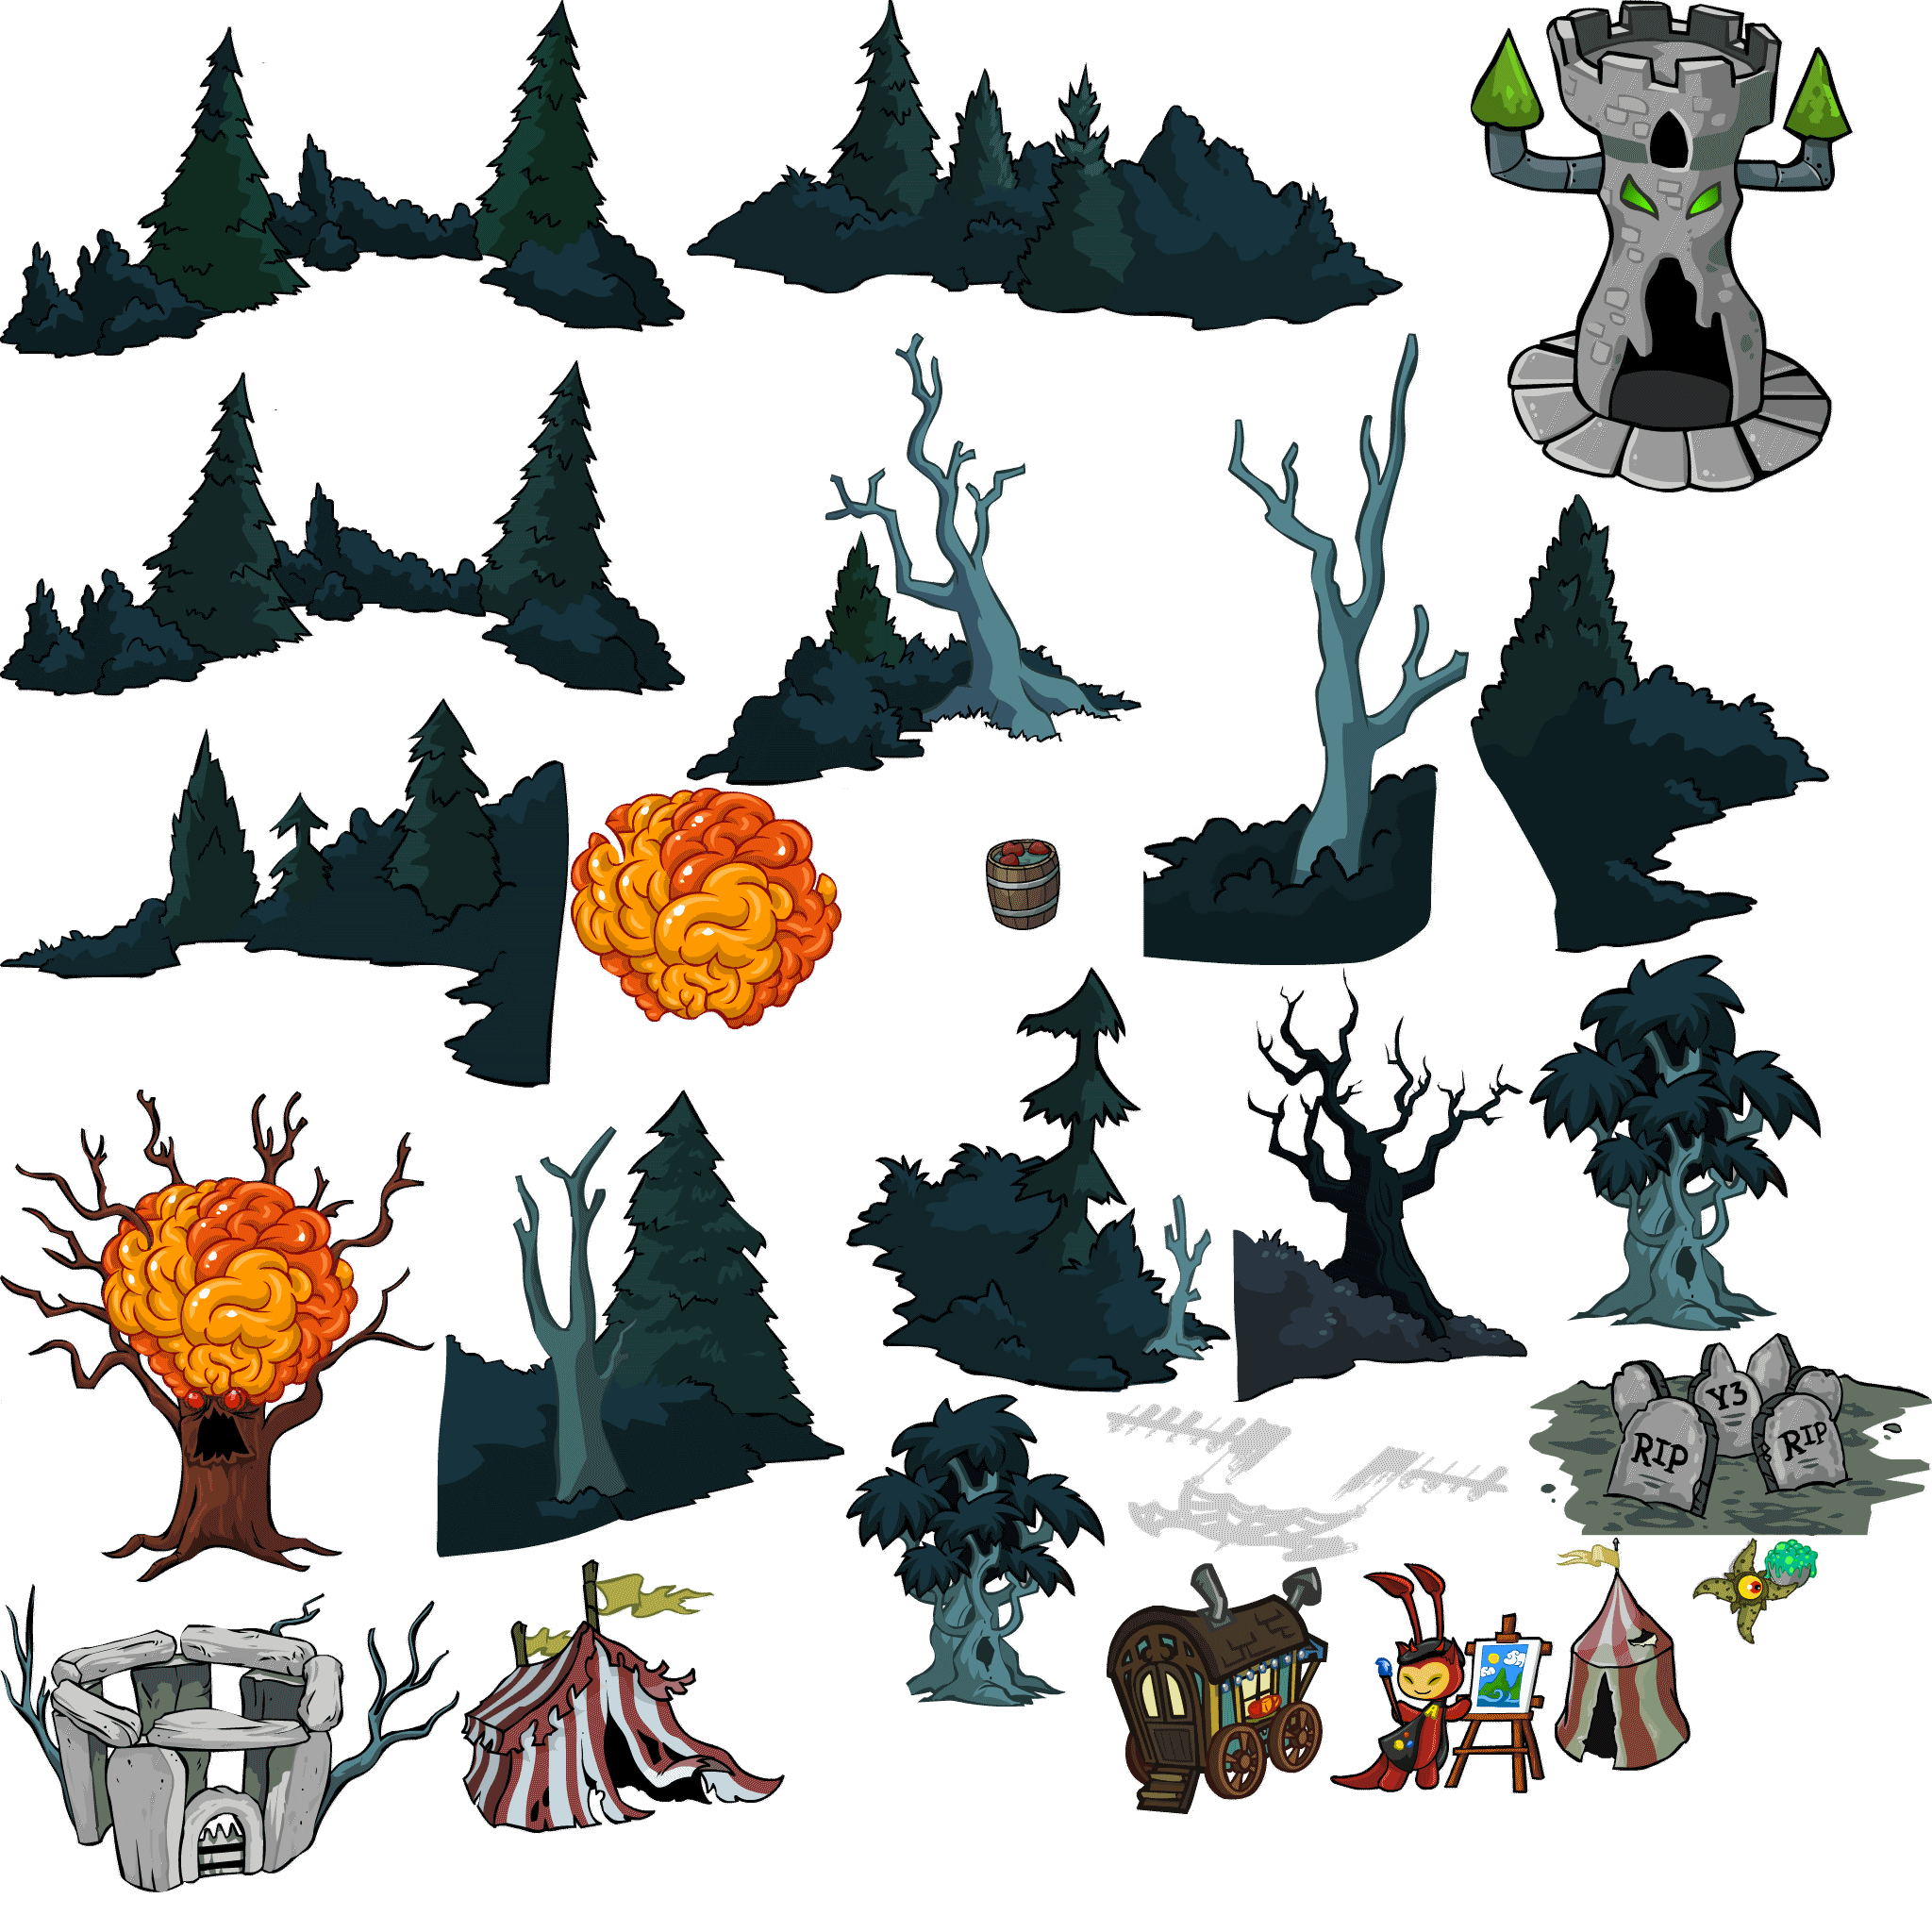 https://images.neopets.com/maps/halloween/hauntedwoods/images/hauntedwoods_2021_v3_HTML5_atlas_3.png